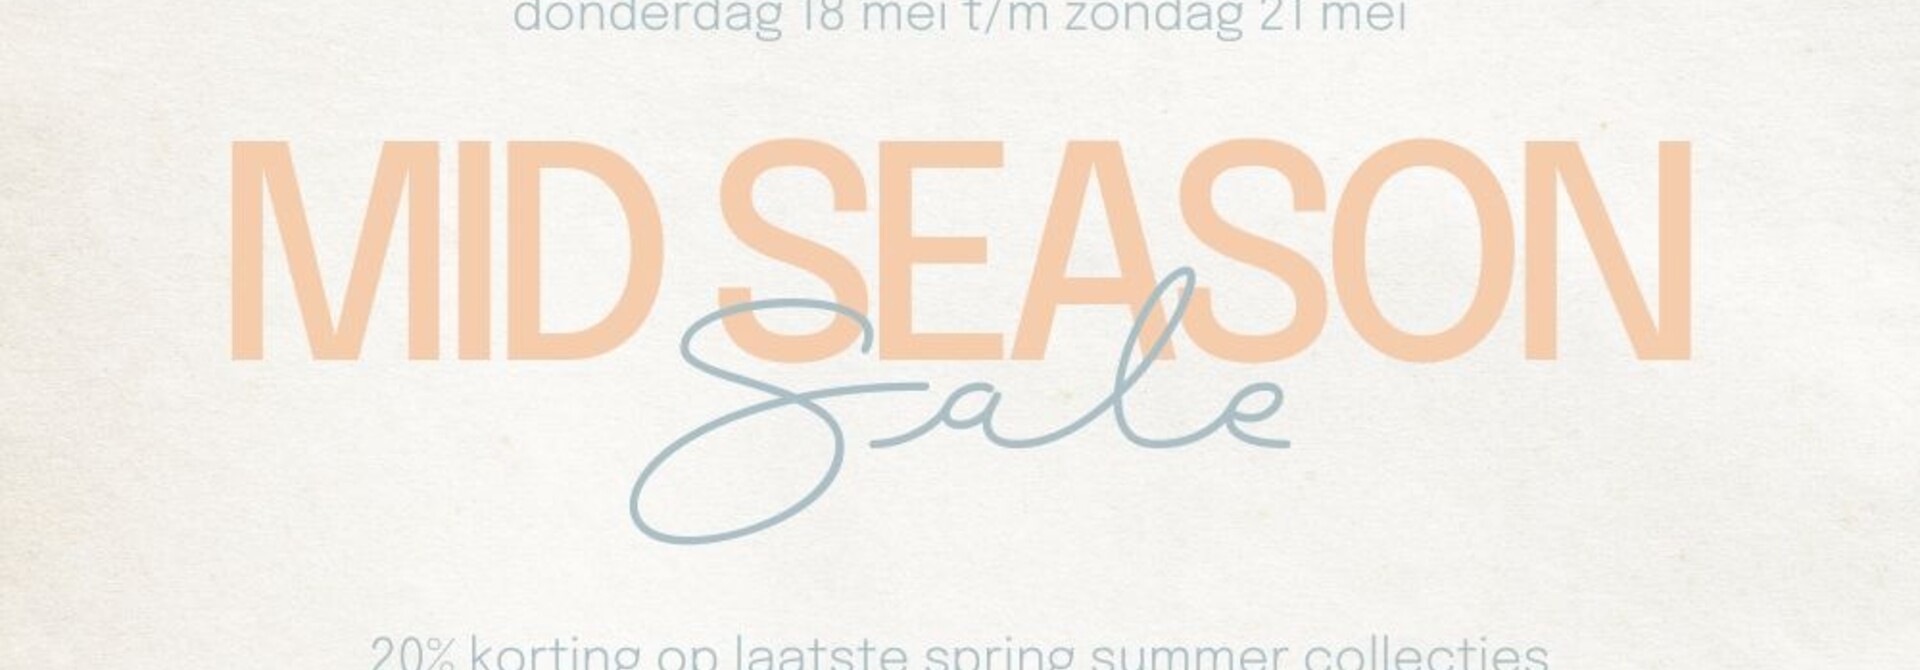 Mid Season Sale | 20% korting op laatste spring summer collecties